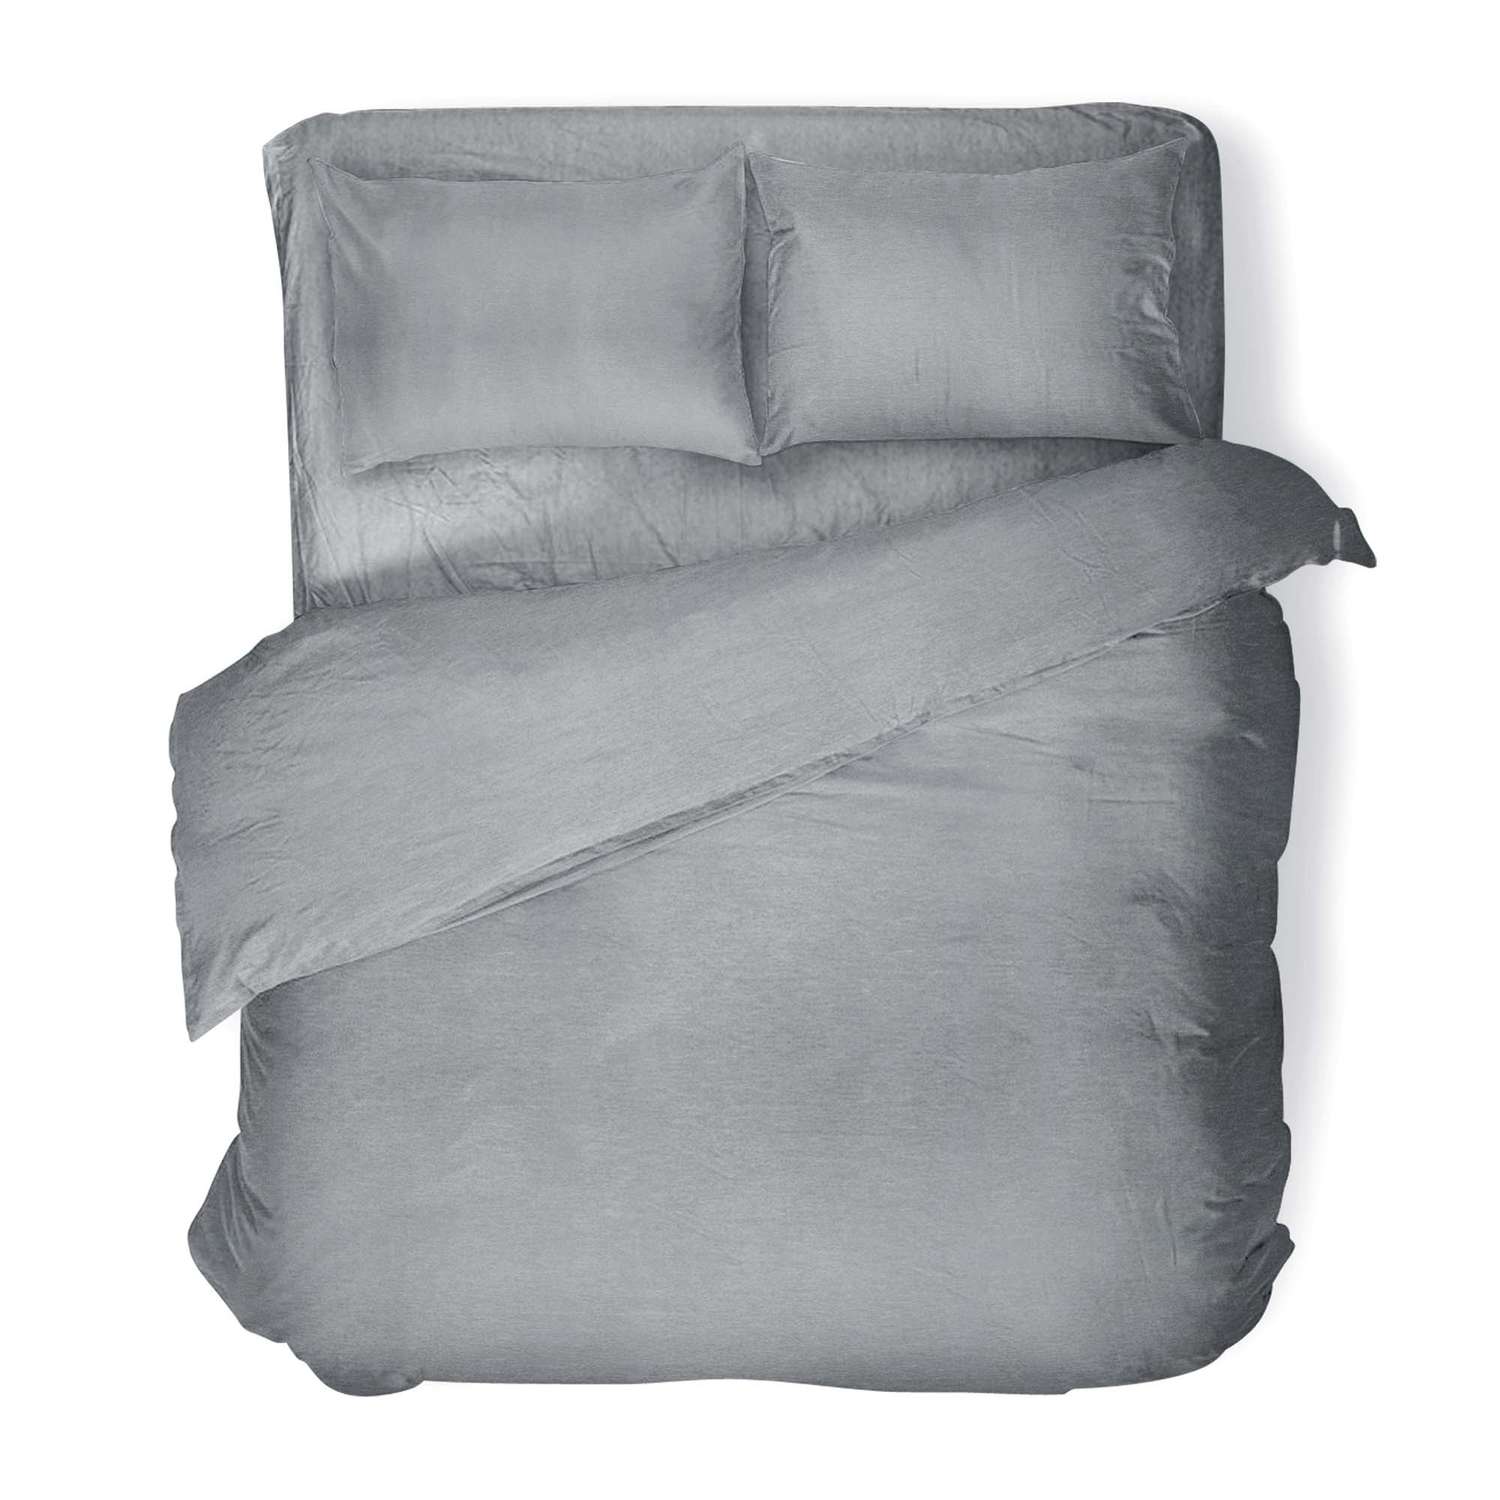 Комплект постельного белья Absolut 2СП Silver наволочки 70х70 меланж - фото 1